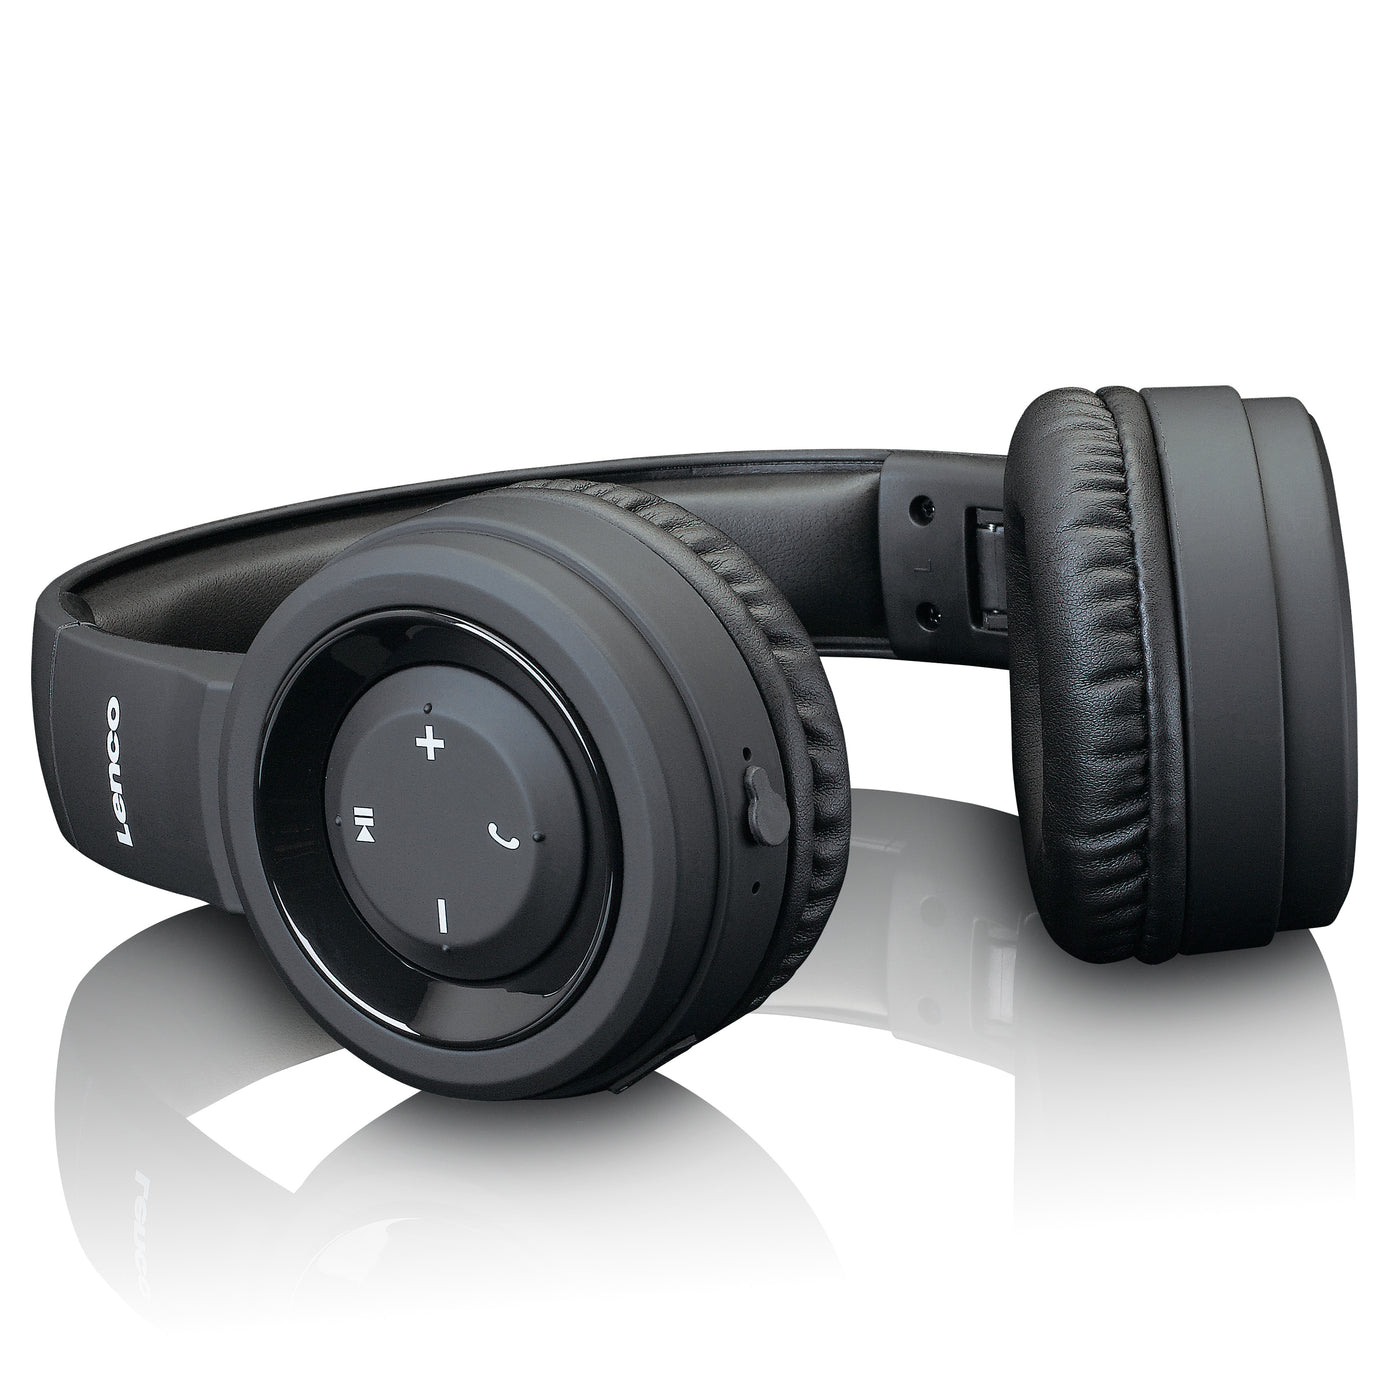 Lenco HPB-330BK - Kopfhörer - Spritzwassergeschützt - Bluetooth® - Schwarz